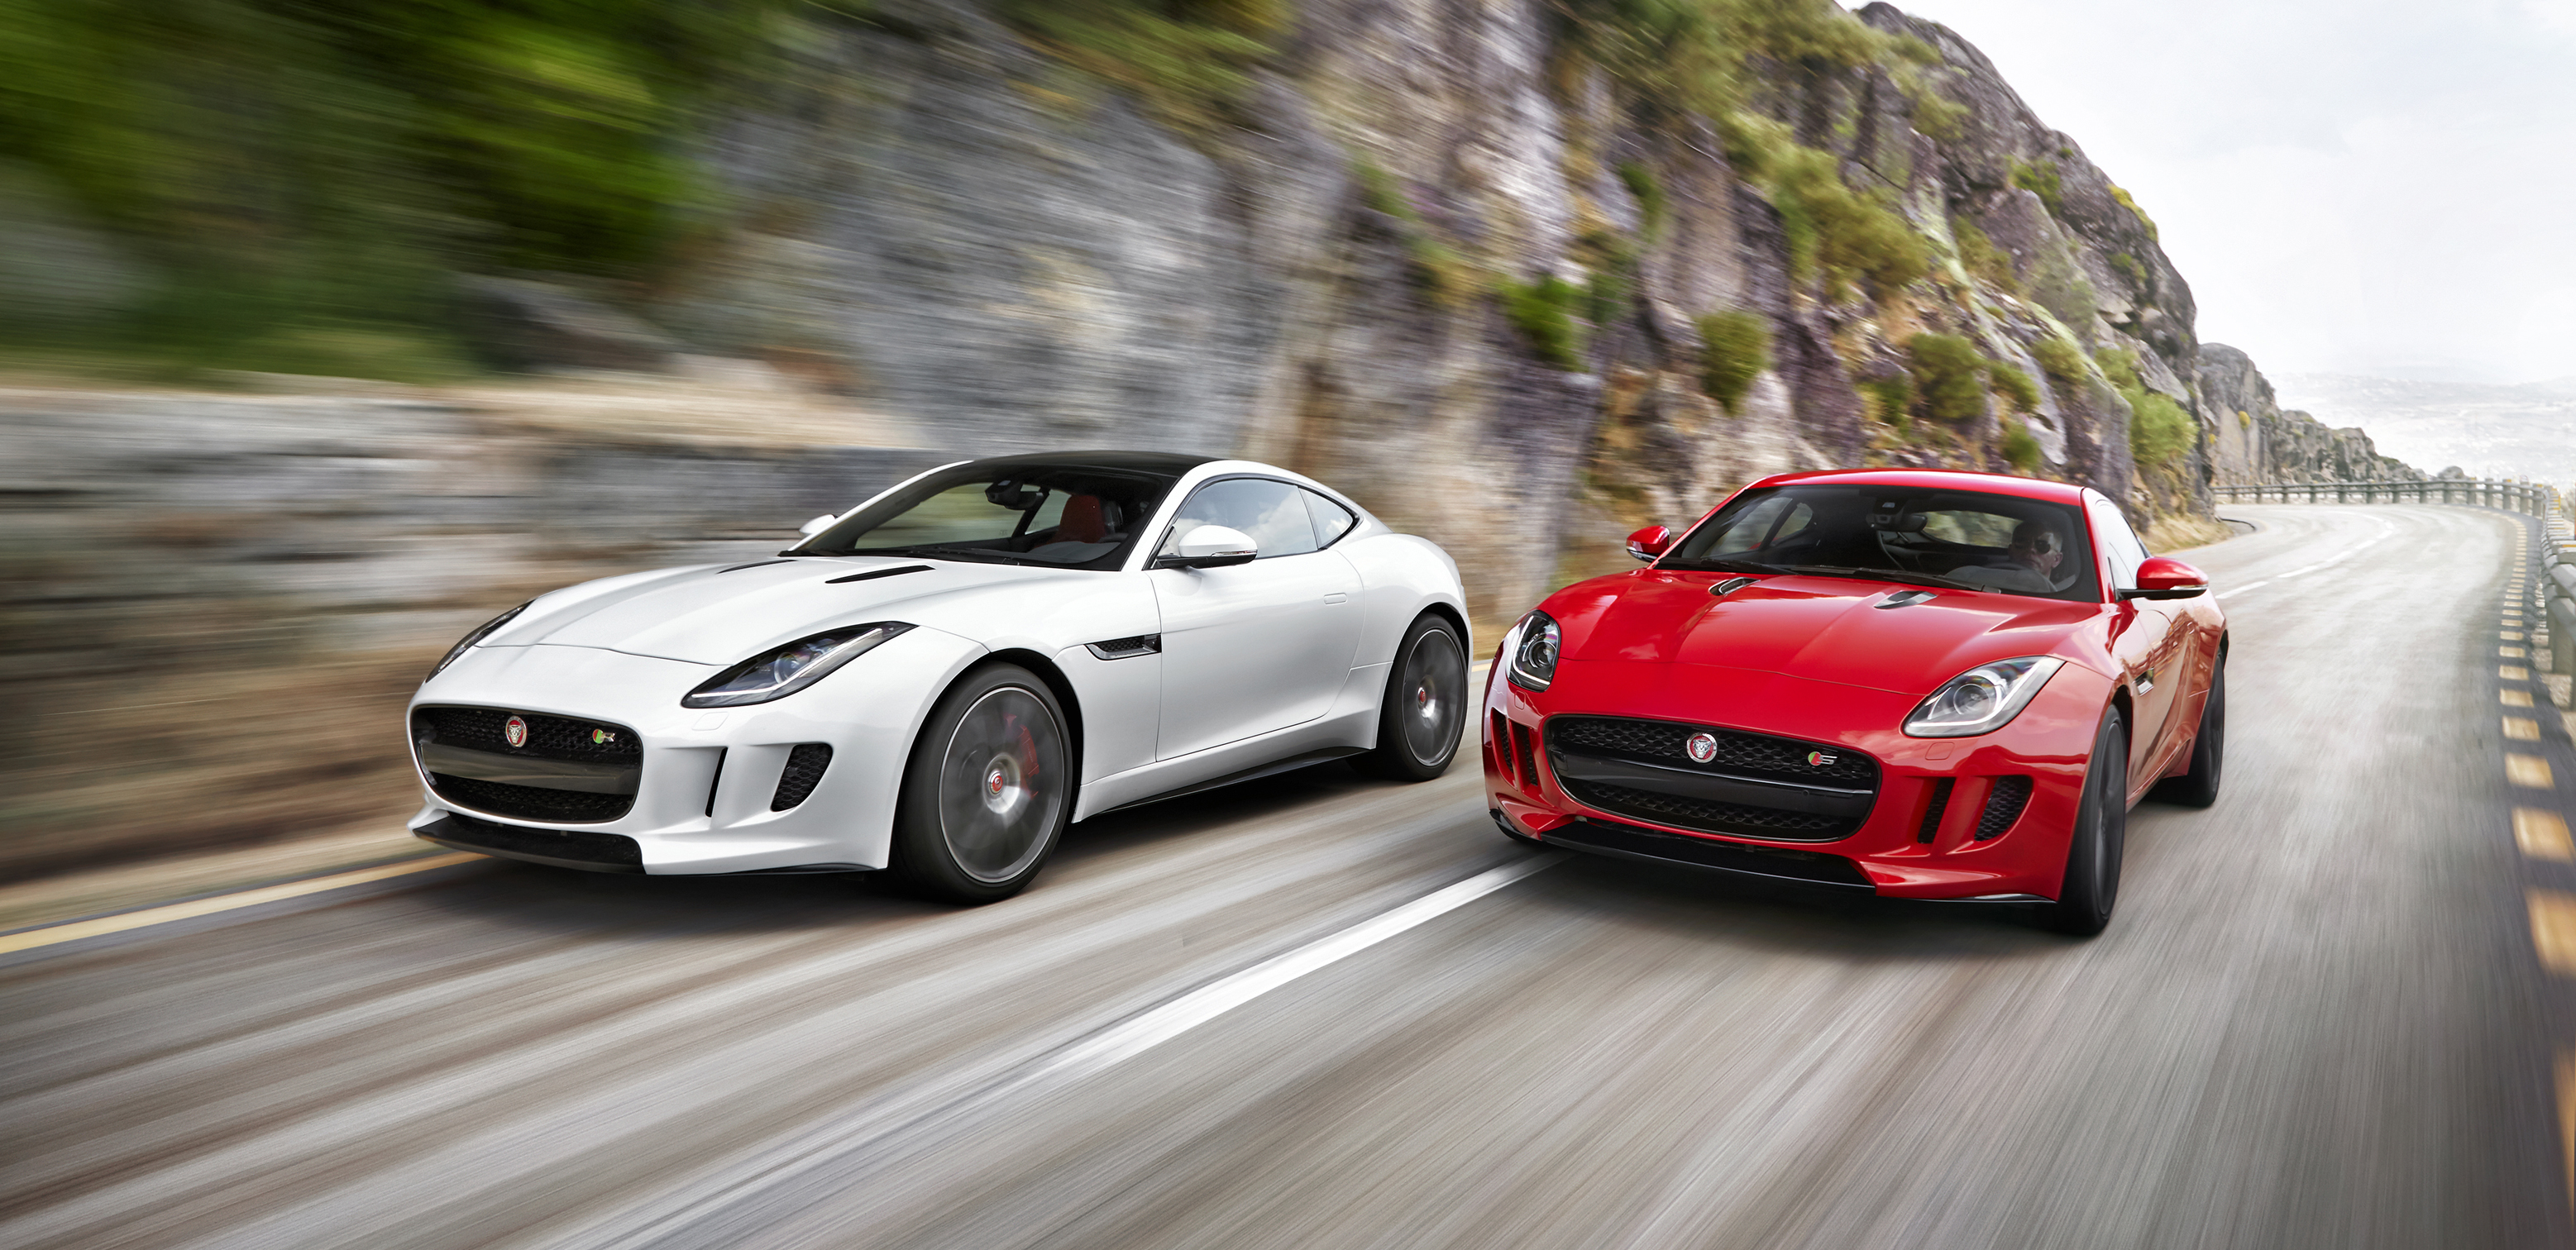 vehicles, jaguar f type, car, jaguar cars, motion blur, supercar, white car, jaguar